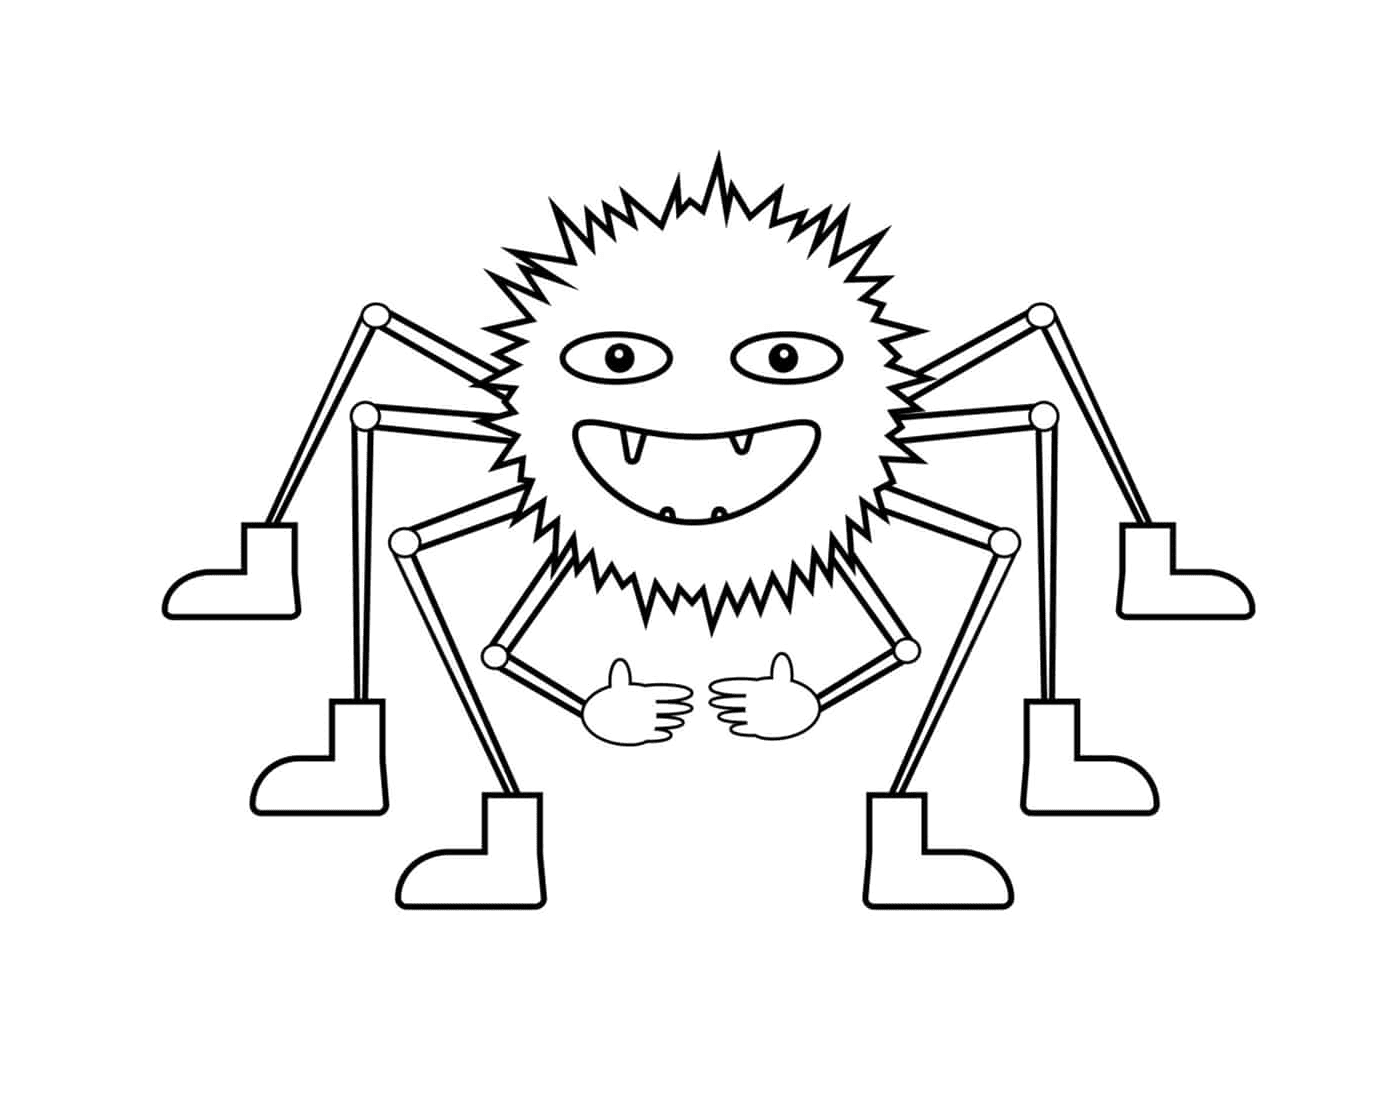  Una araña con múltiples patas 